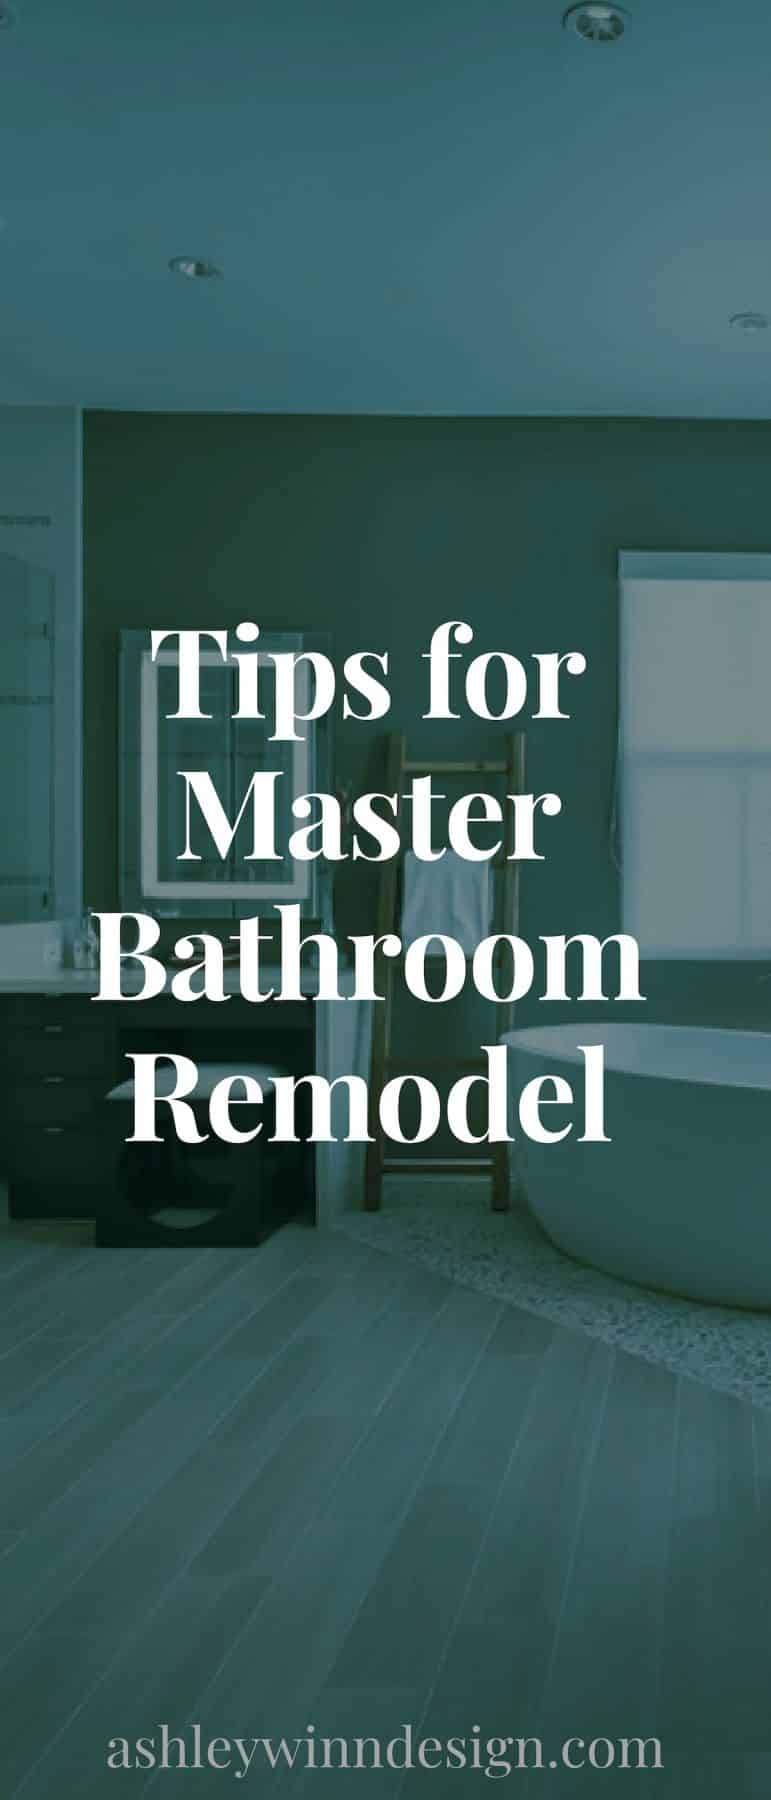 tips for master bathroom remodel